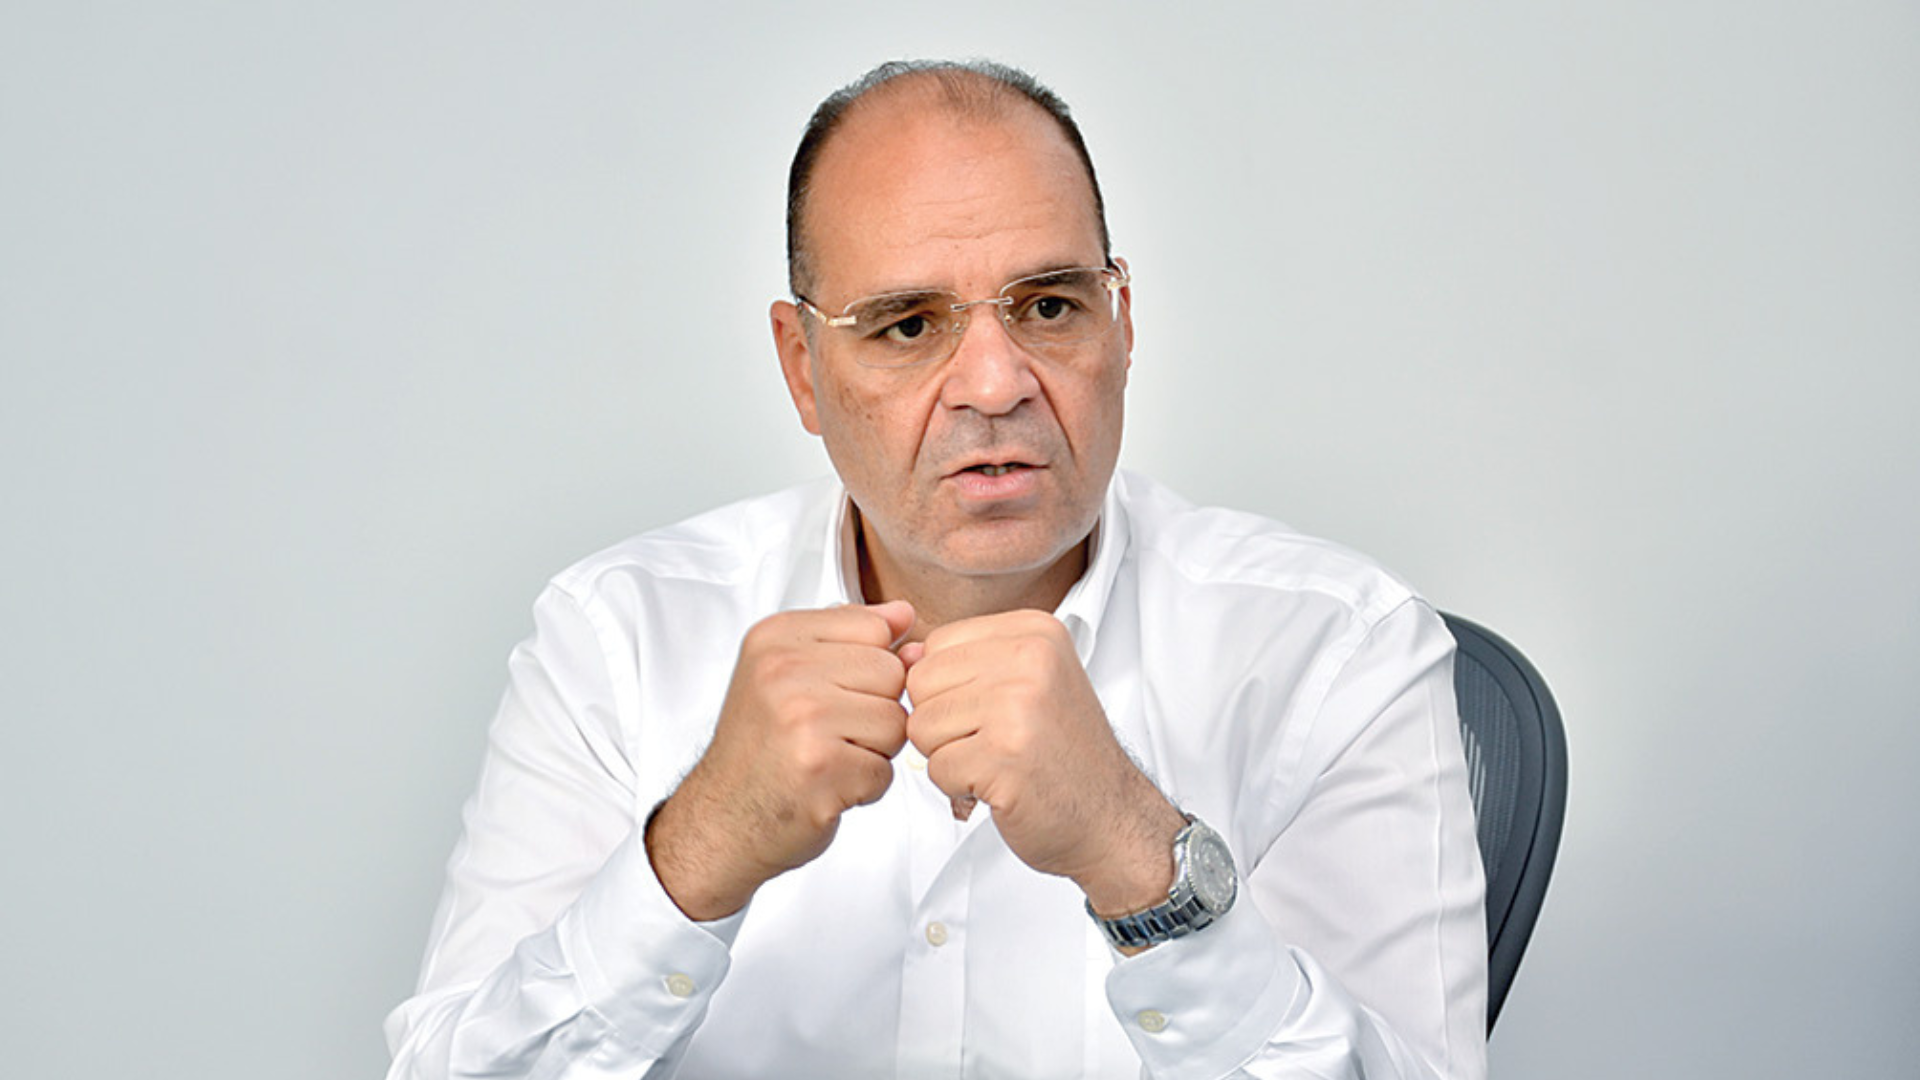  جعفر حسين - رئيس مجلس الإدارة والرئيس التنفيذي لمجموعة شركات الربوة